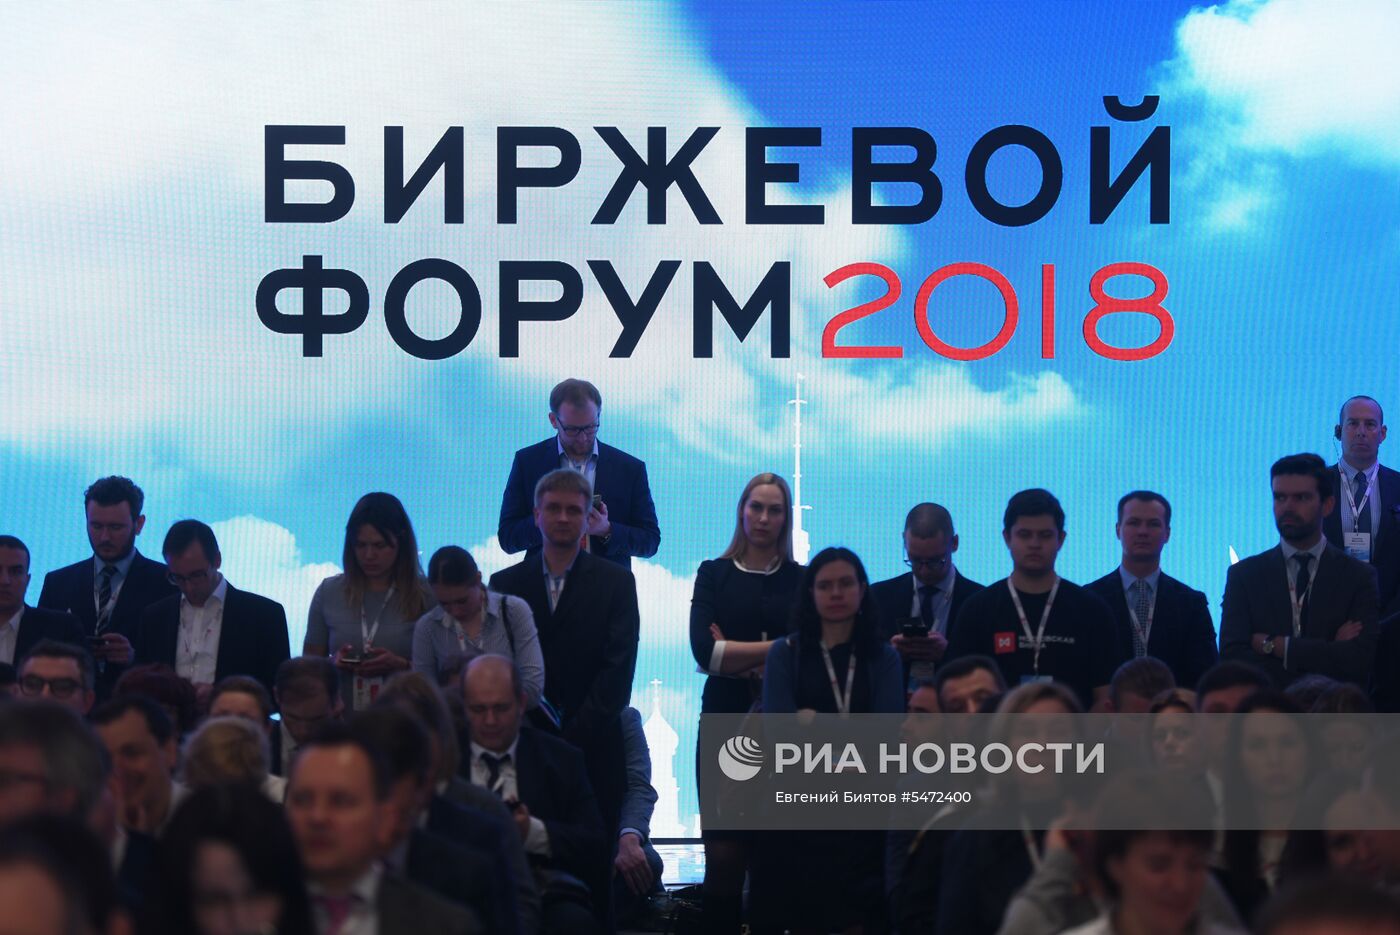 Биржевой форум 2018